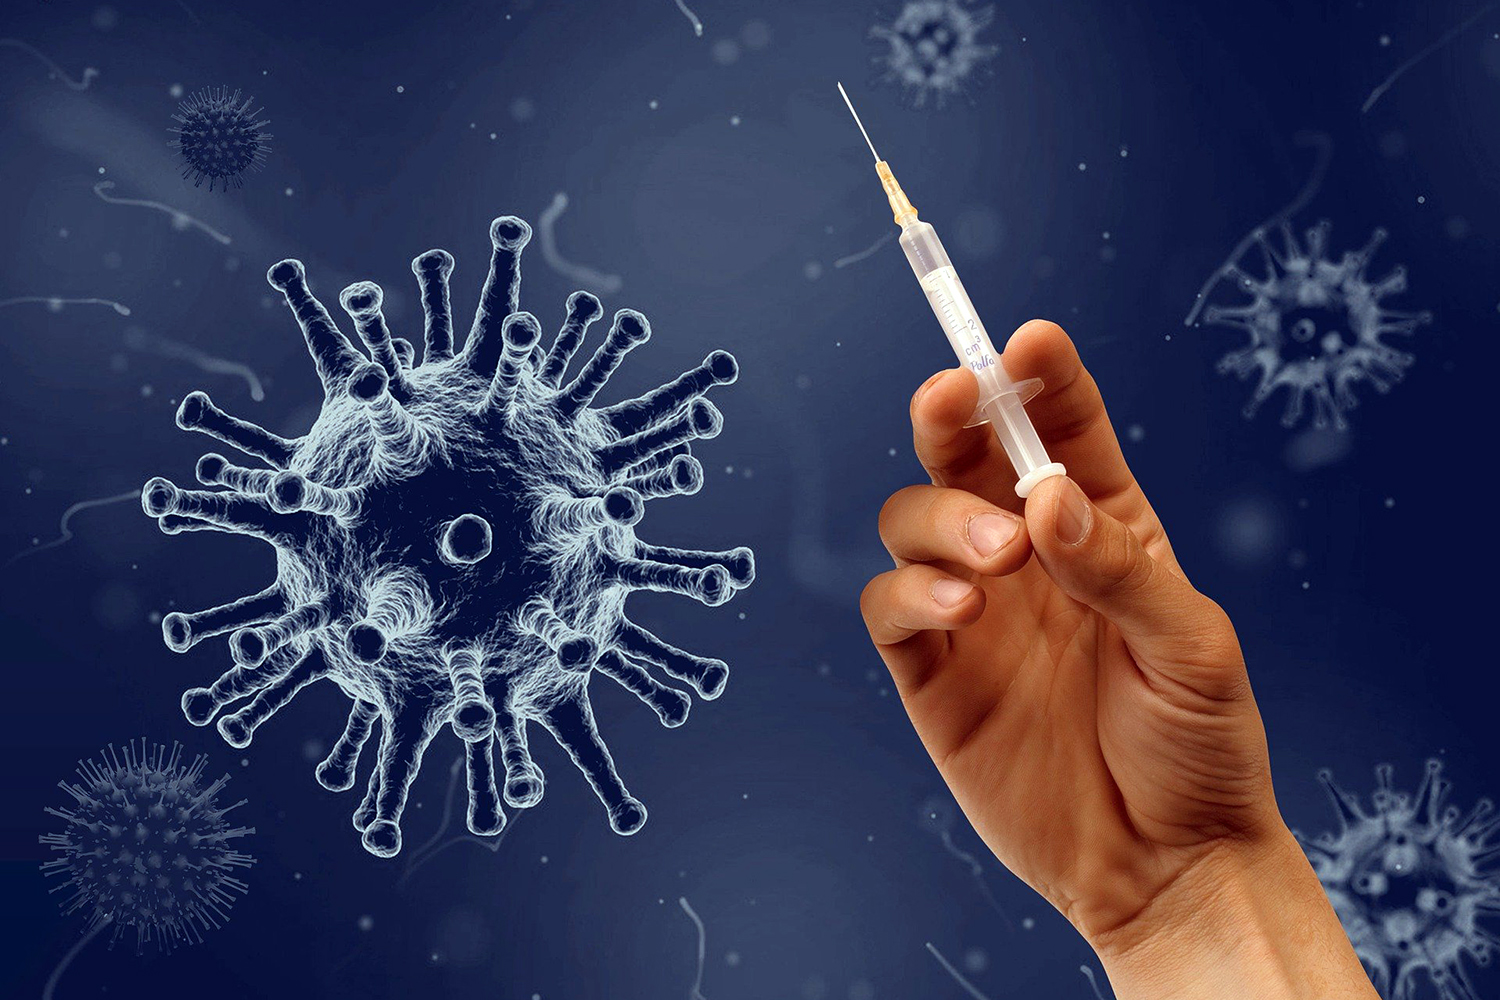 Vacuna coronavirus: La seguridad privada alerta de la venta de vacunas  falsas en México